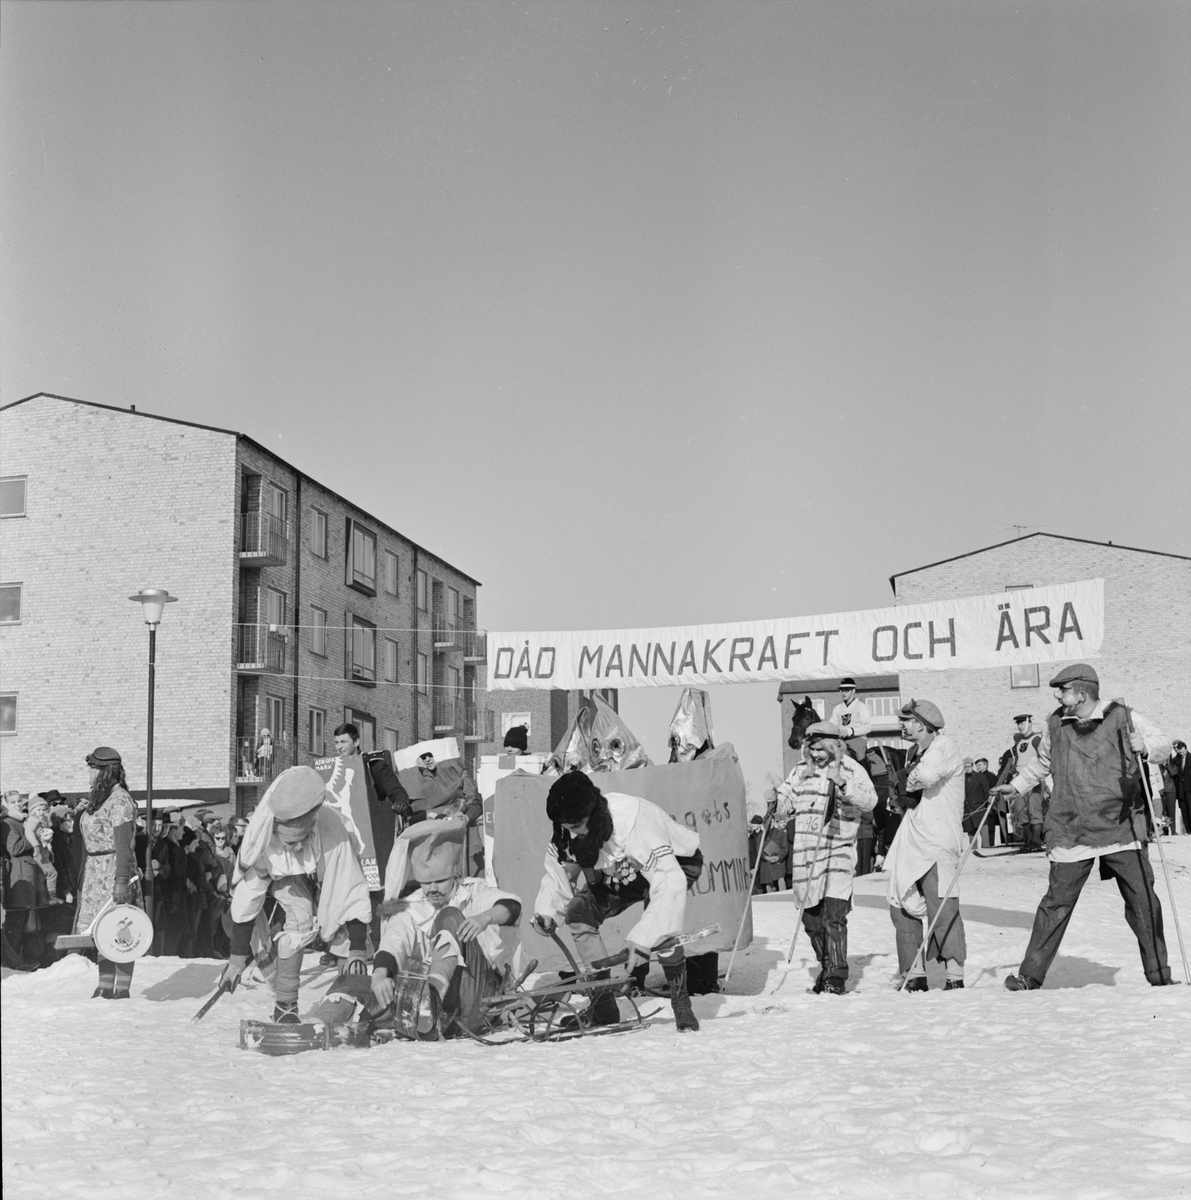 Studentliv - skidtävlingen Birkarlarenneth, Uppsala 1962